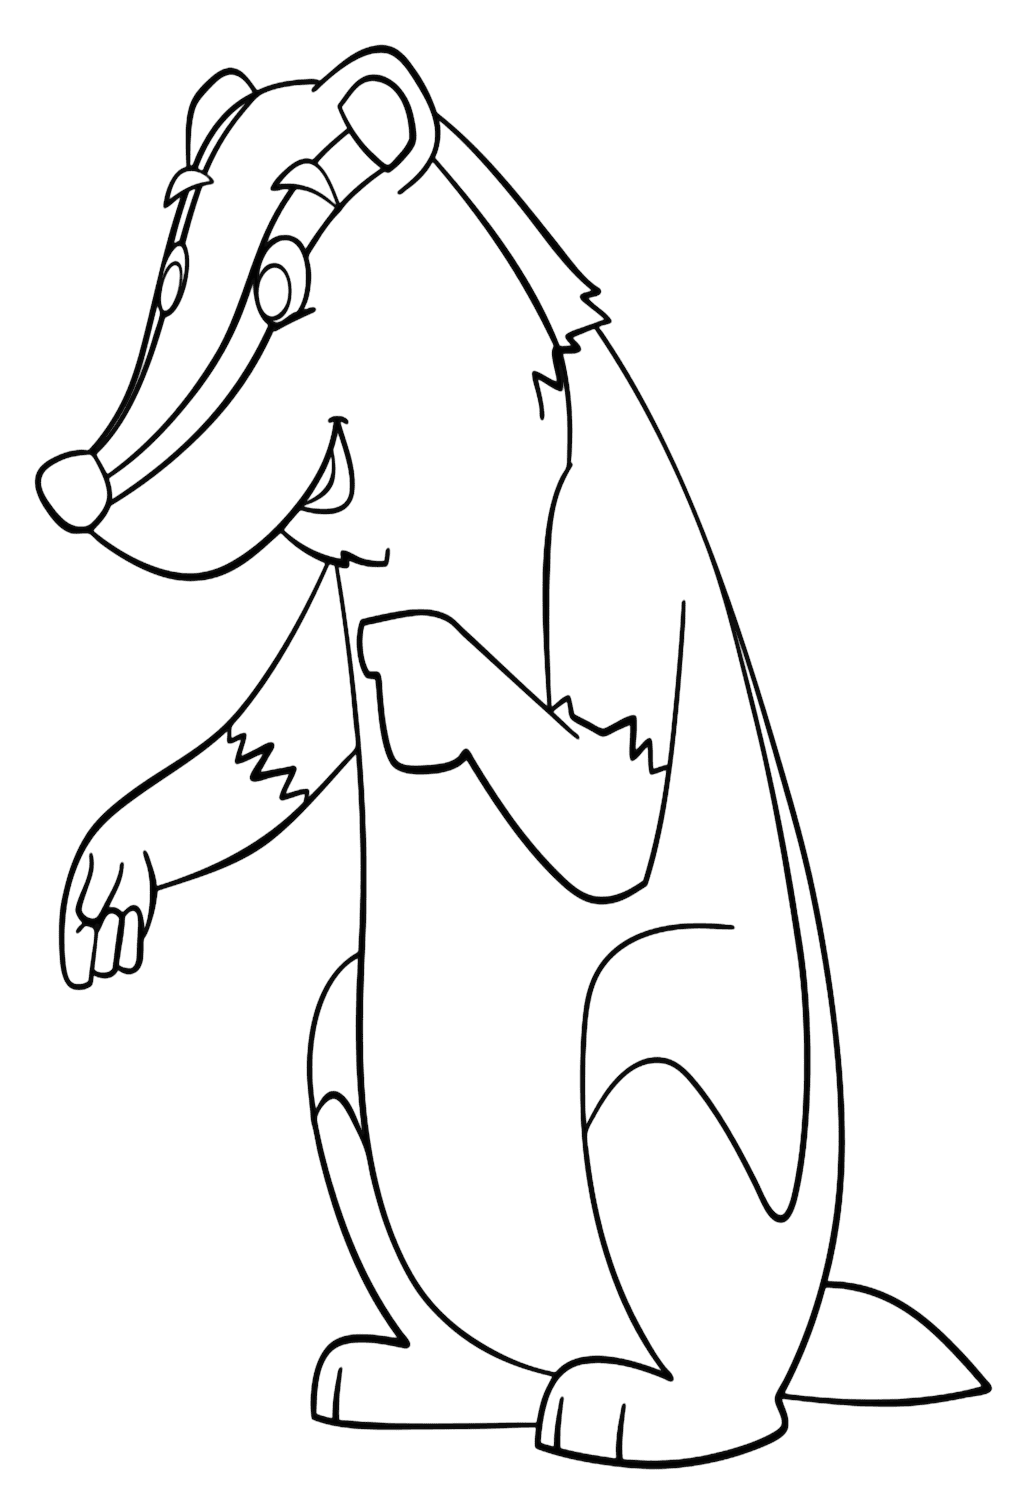 Página para colorear de tejón de dibujos animados de Badger